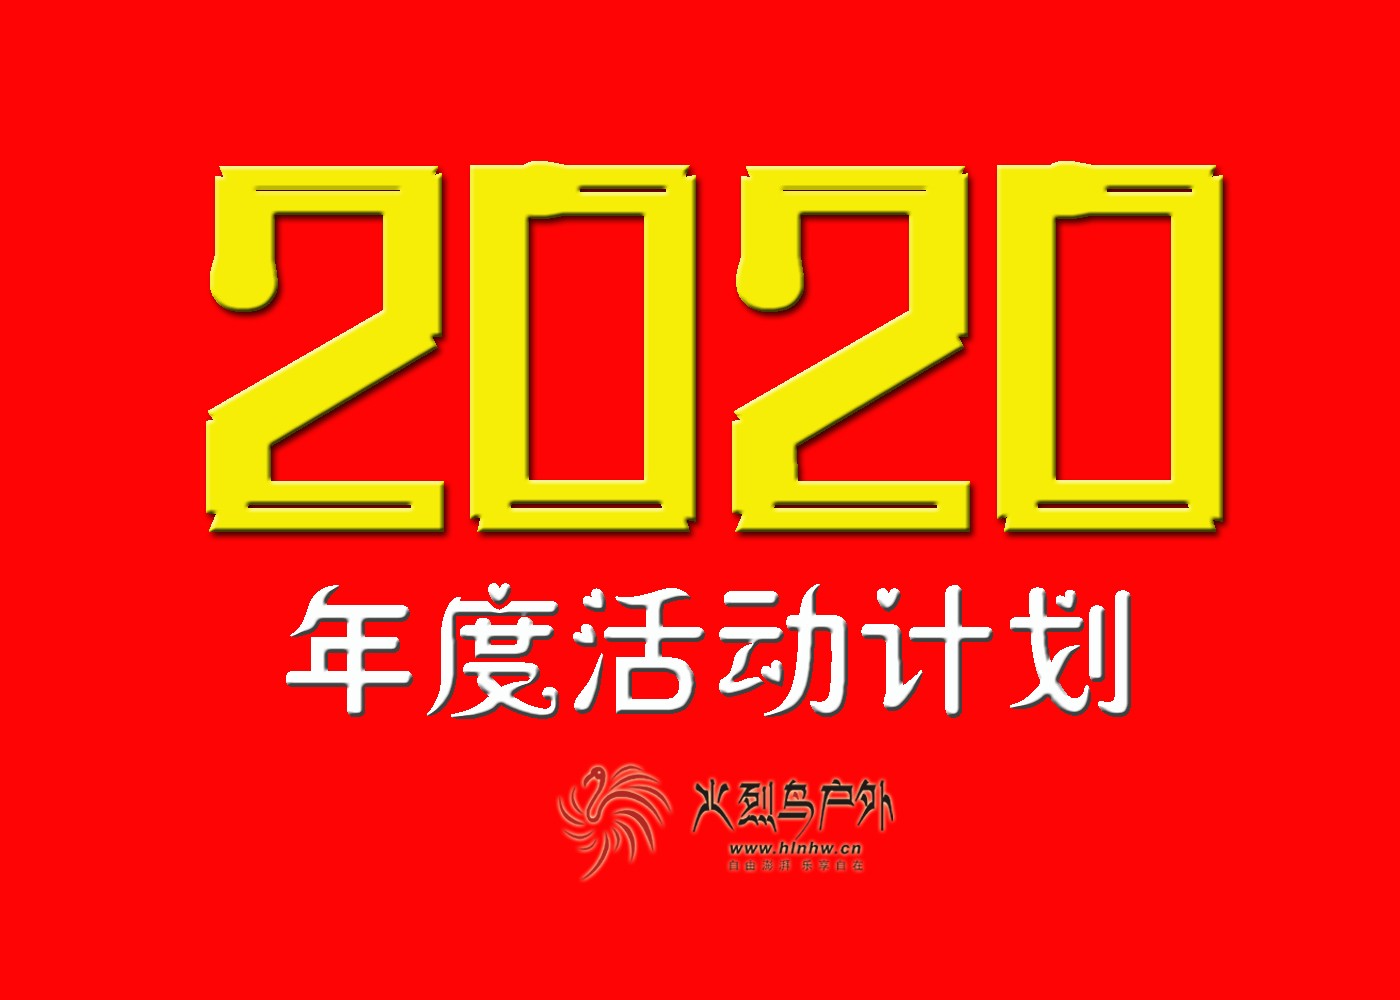 2020活动计划 拷贝2.jpg